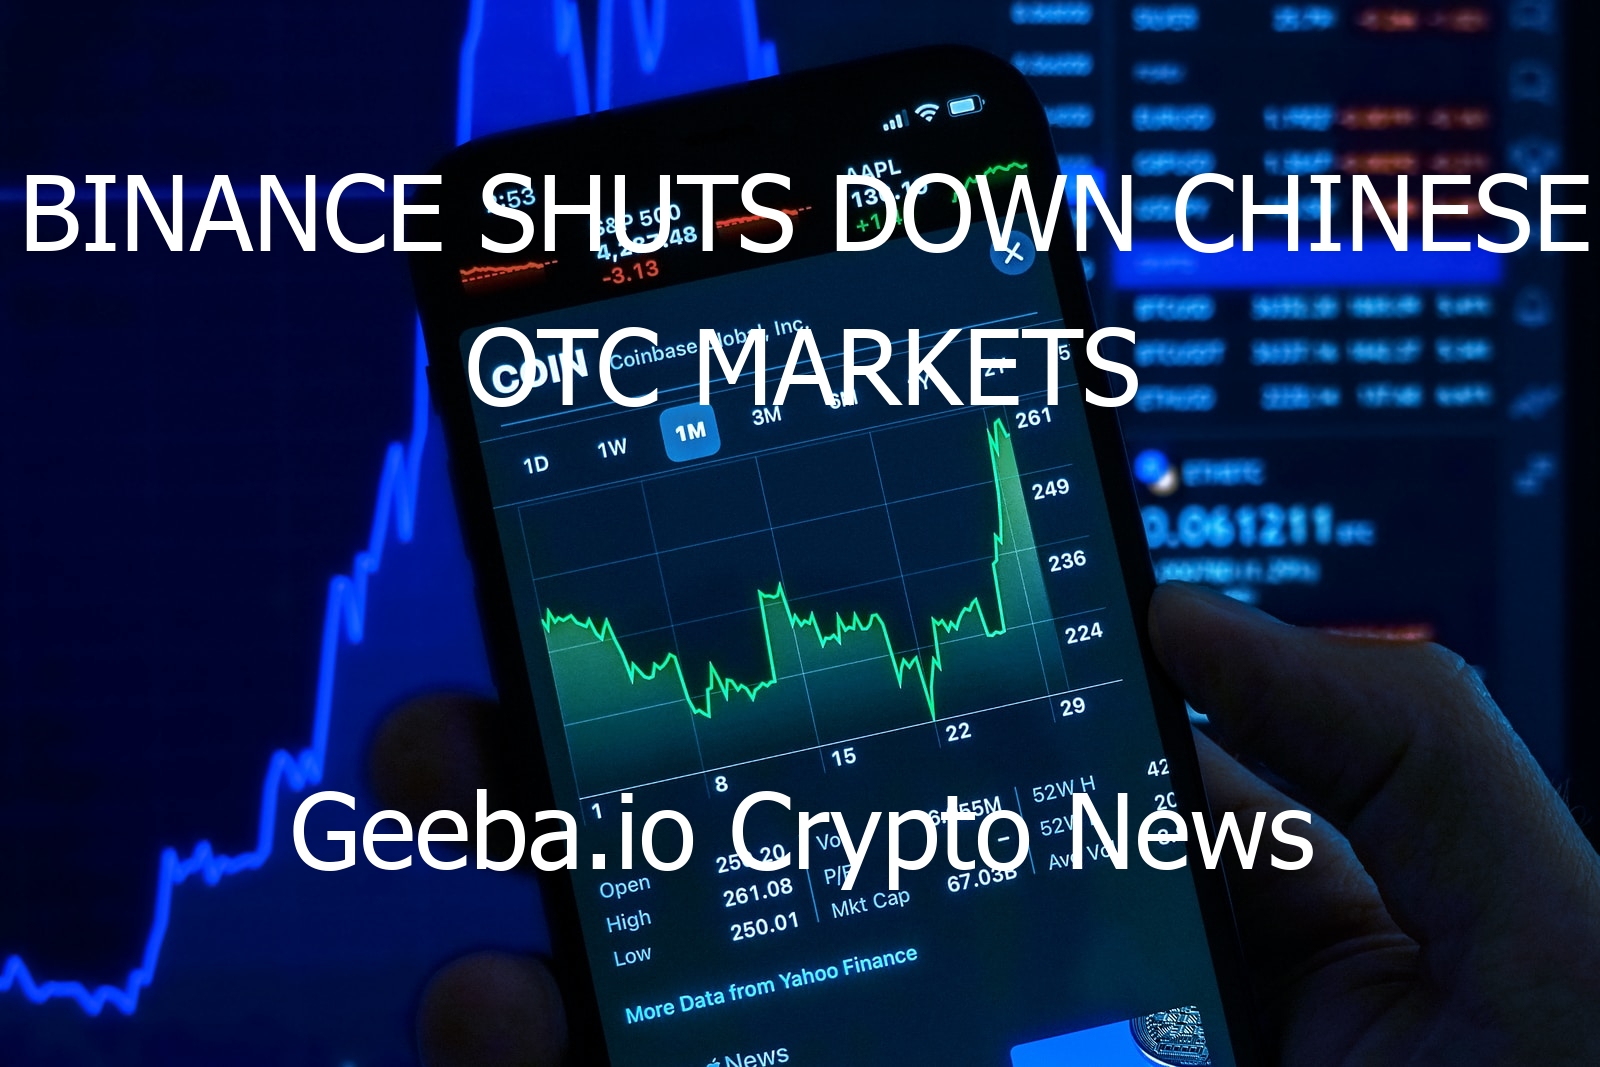 binance shuts down chinese otc markets 2093